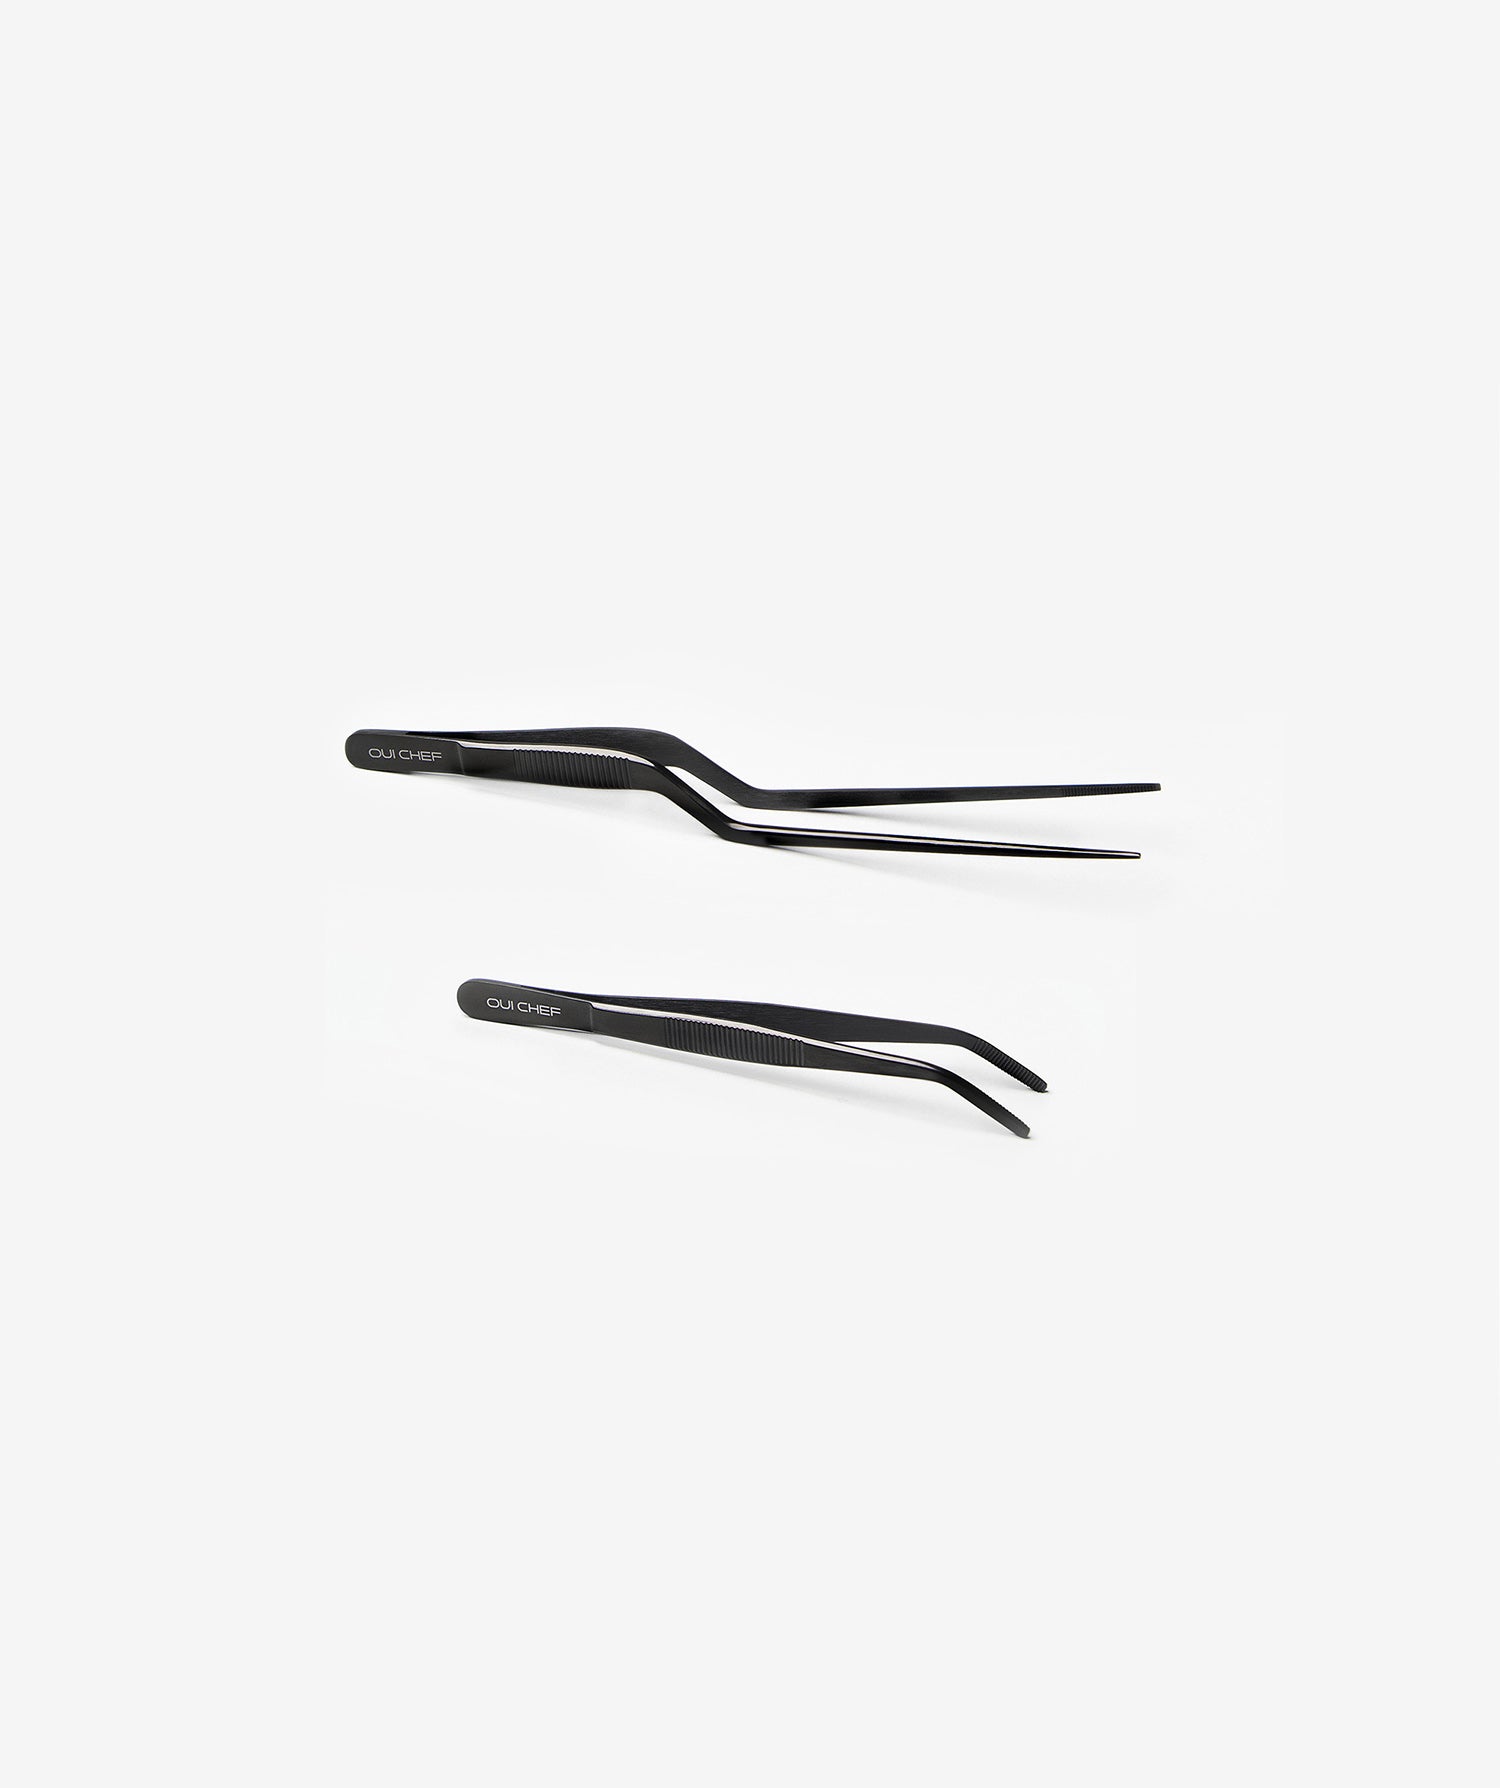 Medium offset tweezers in black next to a small angled tip black tweezers